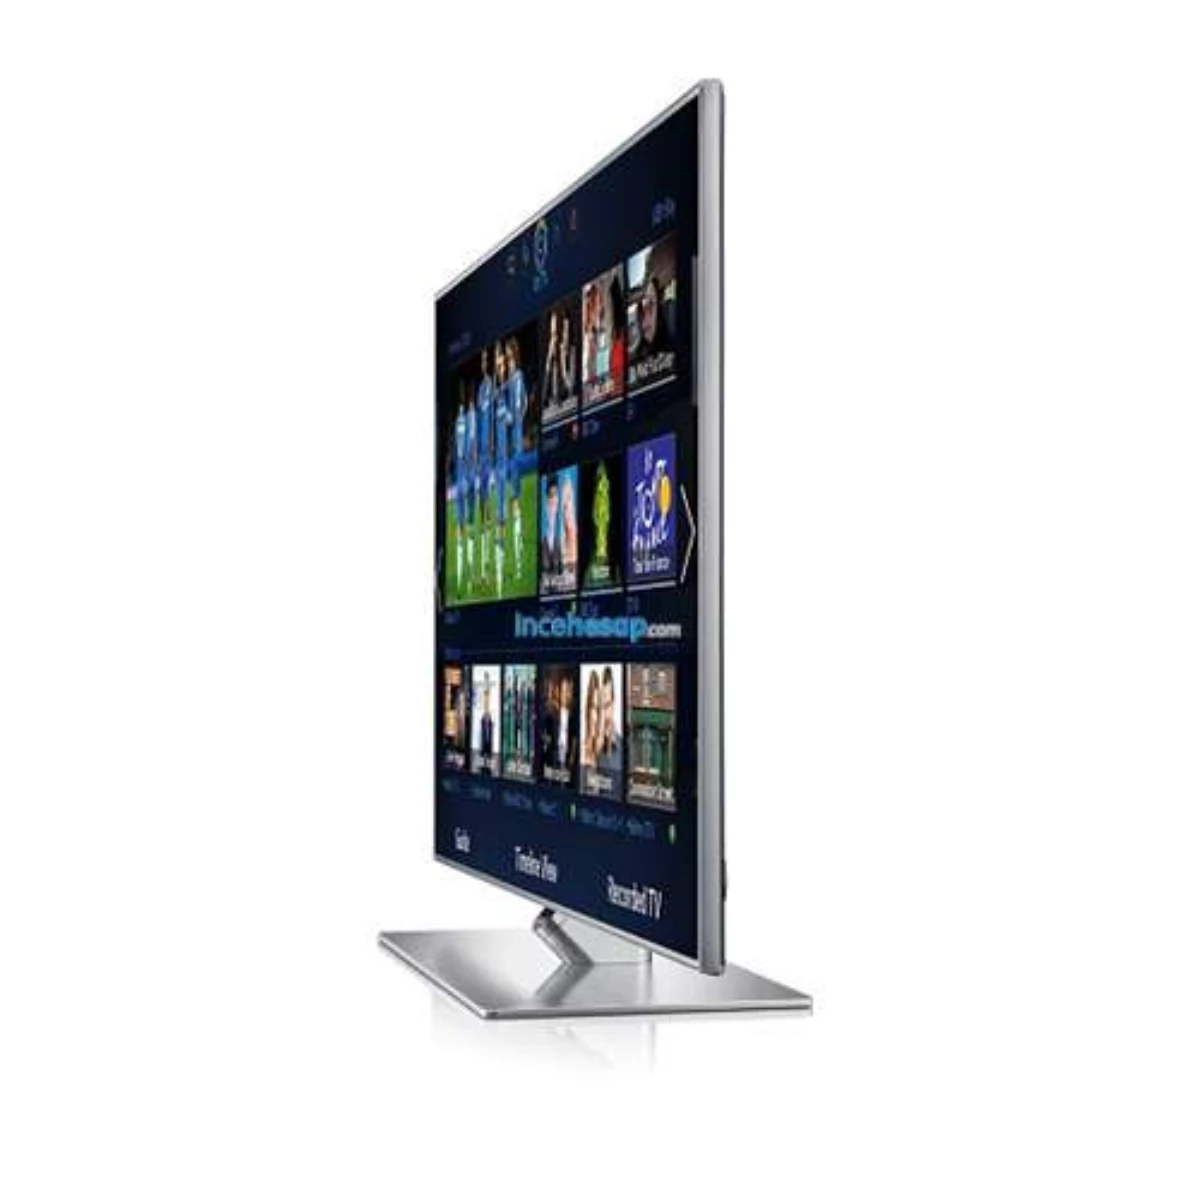 Samsung 55f7000 Full Hd Led Tv